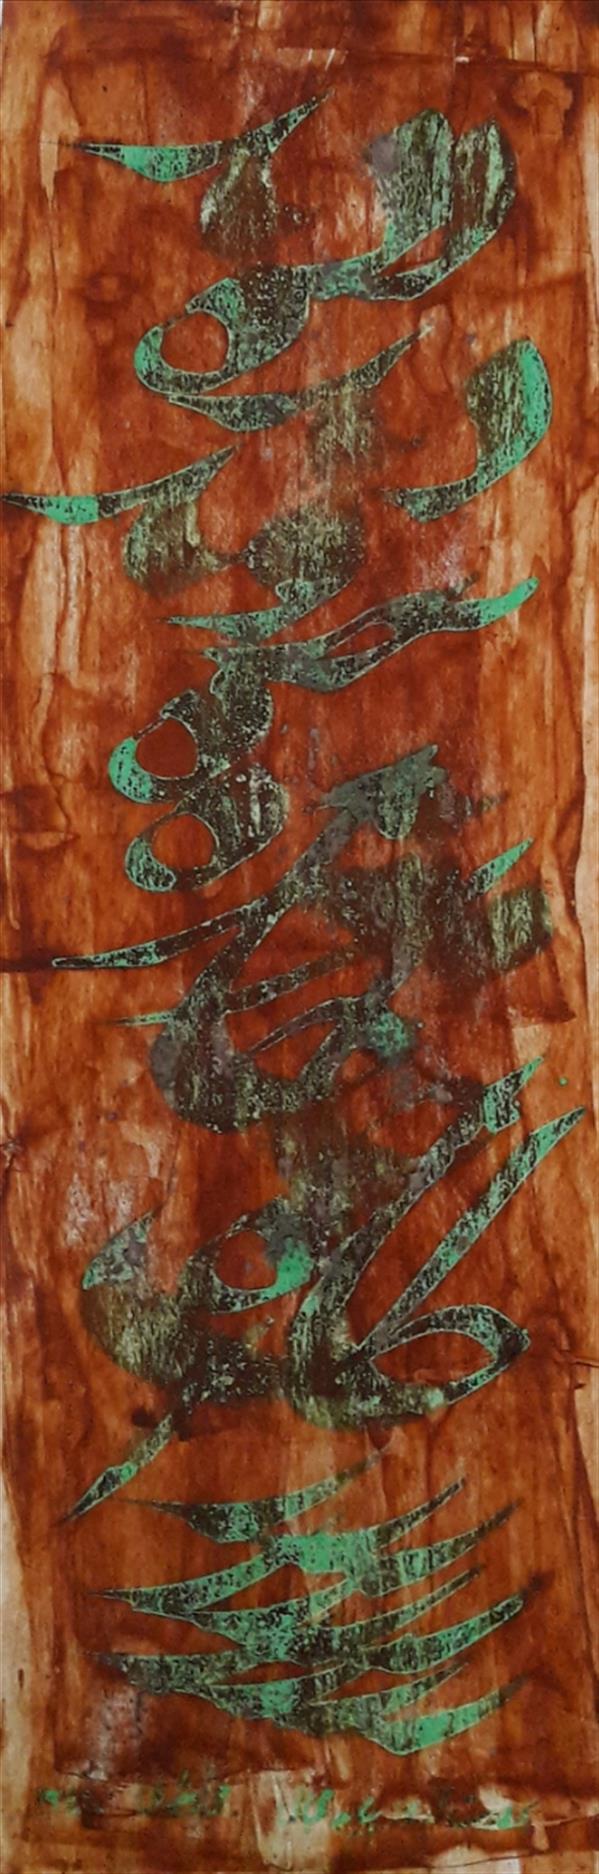 هنر خوشنویسی محفل خوشنویسی محمد مظهری (فروخته شد)
(دیده بروبد به مژه خاک راه)
بر درت ار باز بیابد مجال
۵۰×۱۷
مرکب و اکریلیک روی مقوا